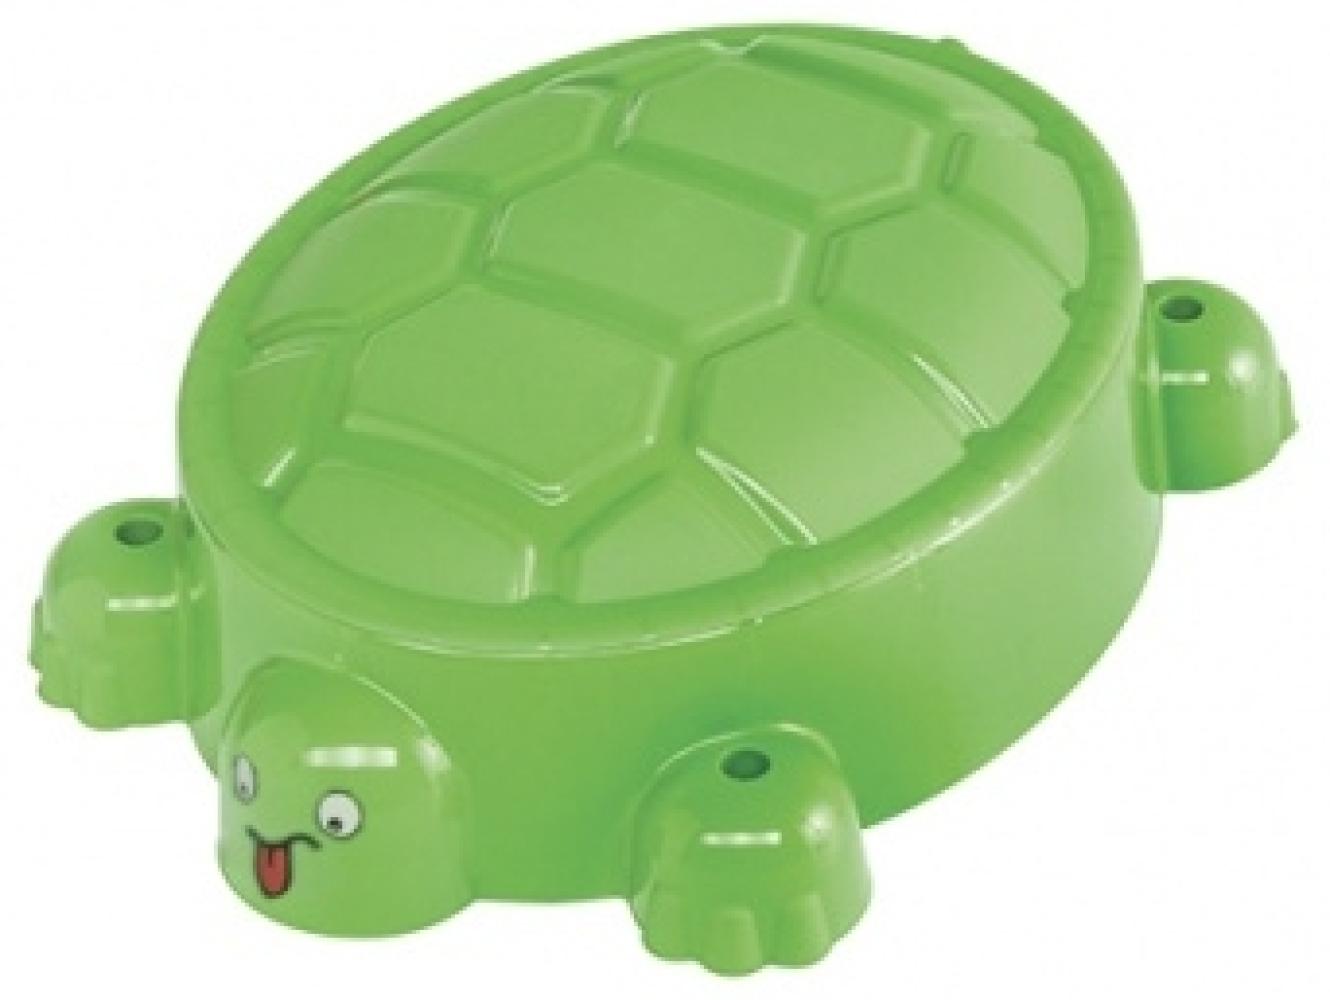 Paradiso Toys 743 – Outdoor – Sandkasten Schildkröte + Deckel,grün Bild 1